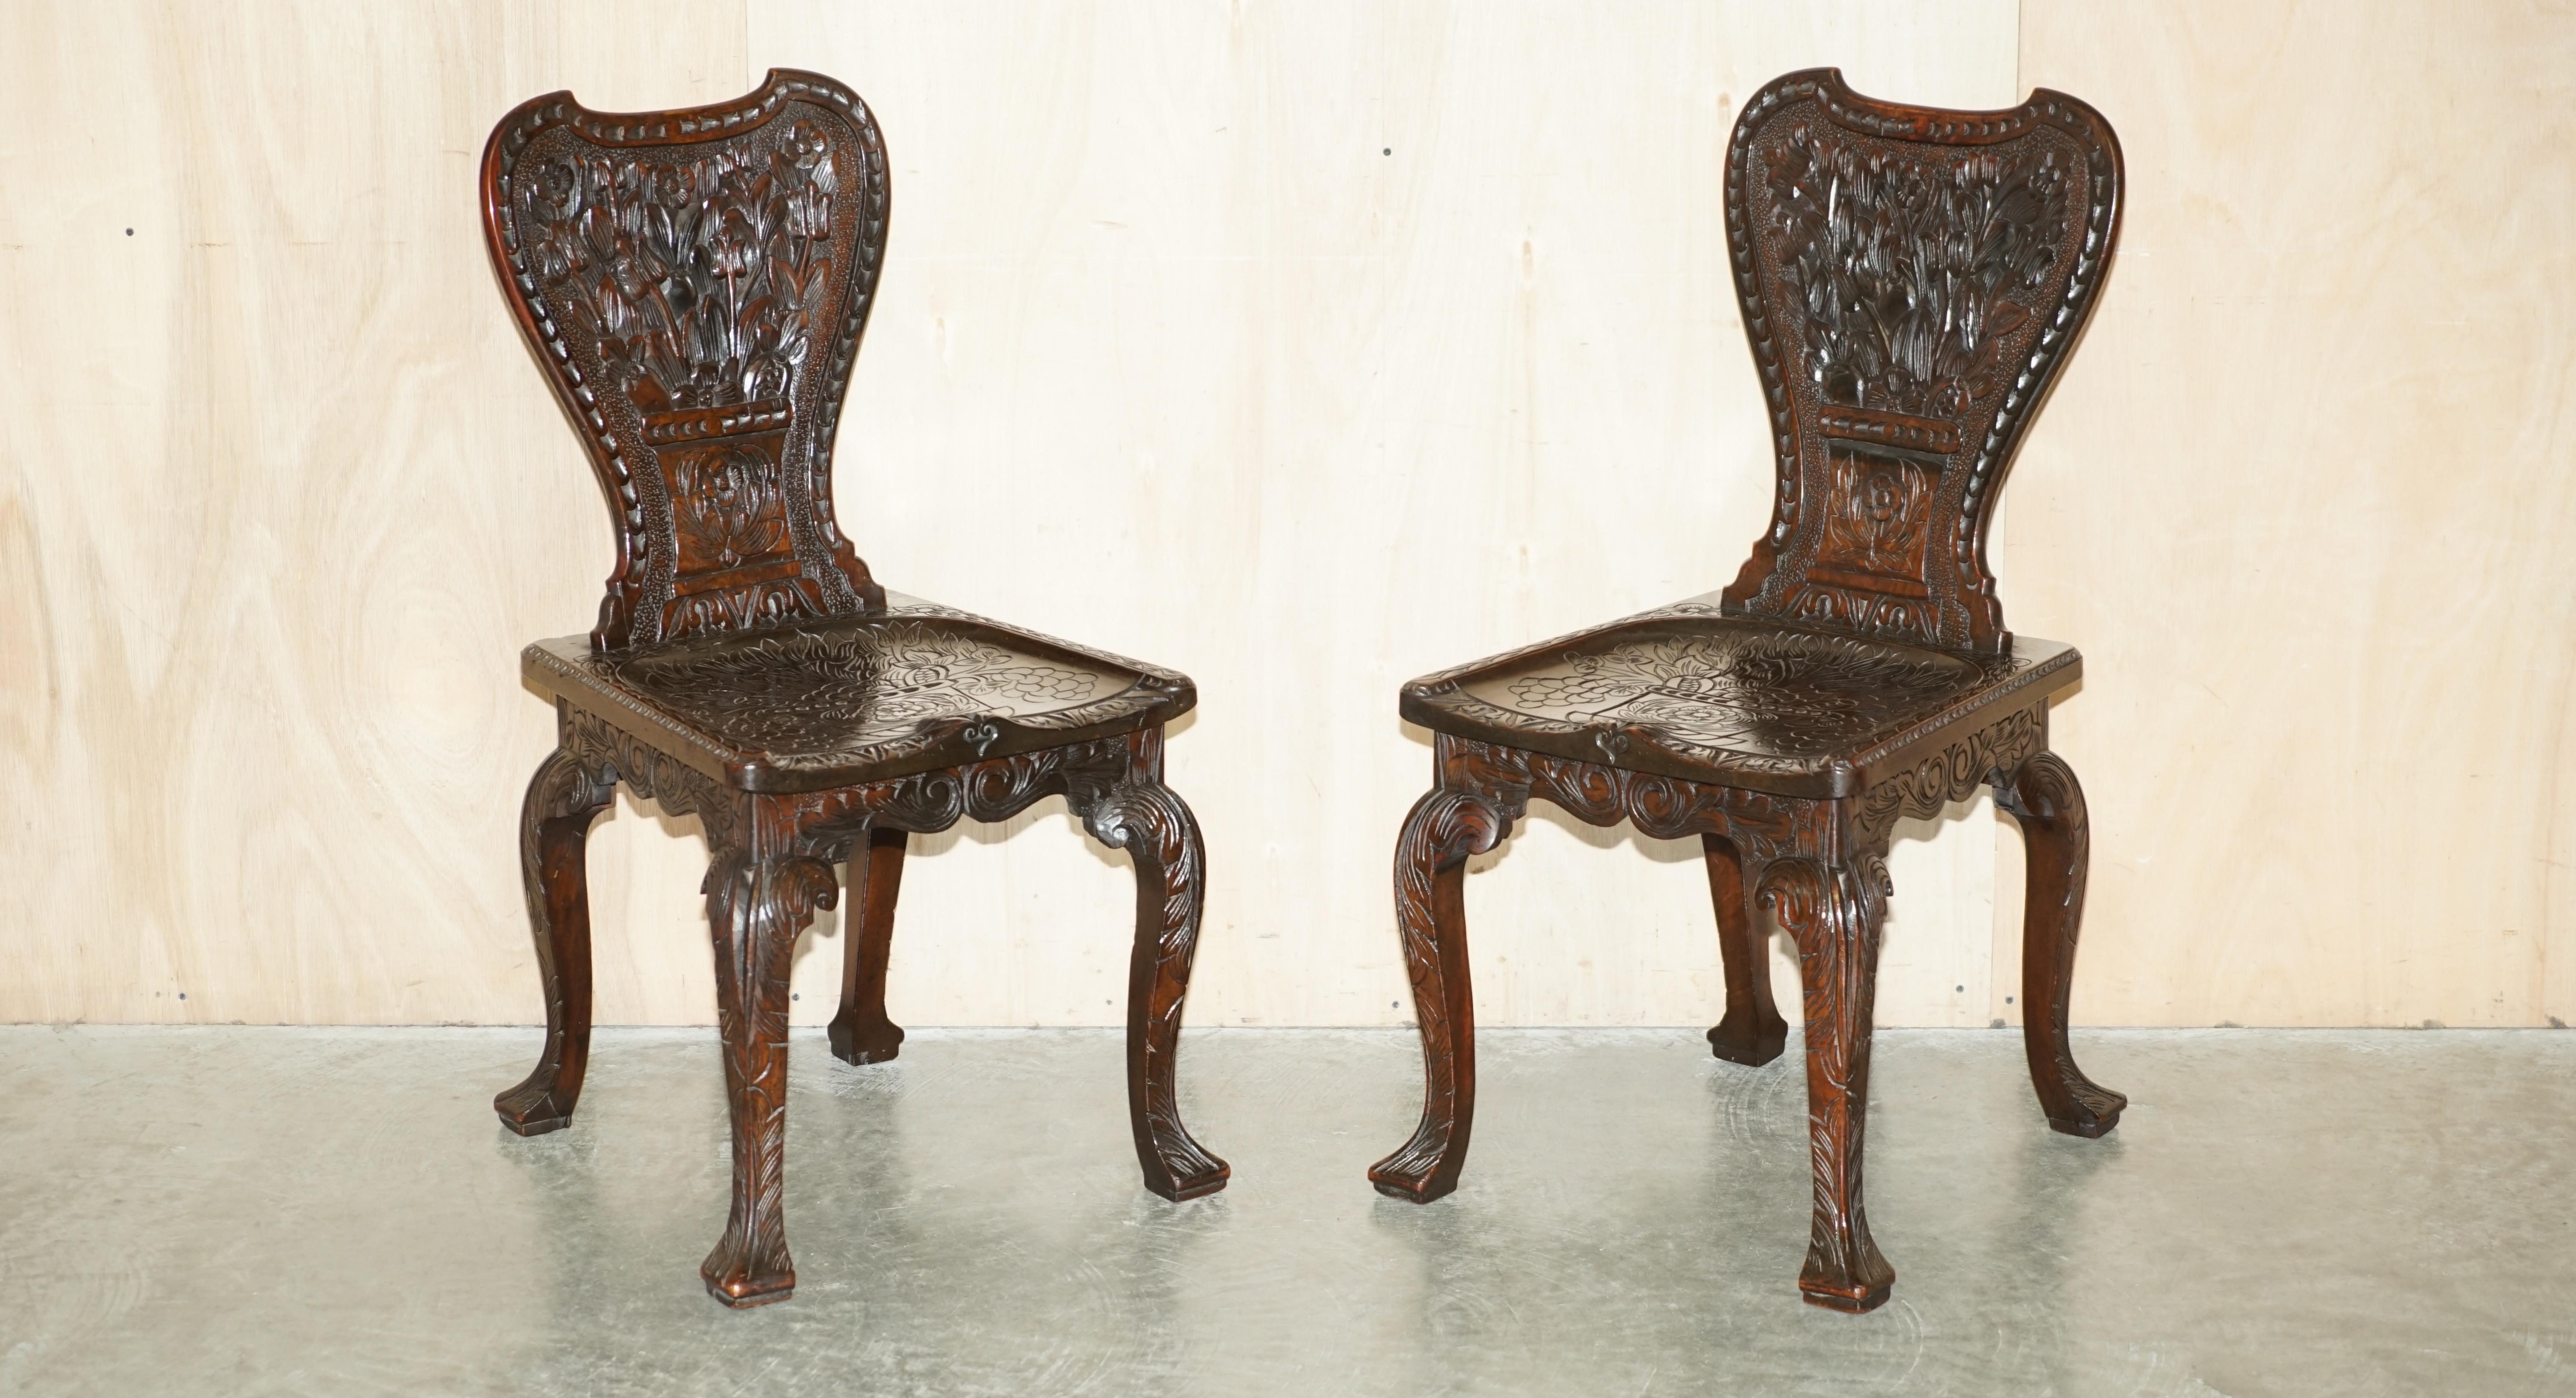 Royal House Antiques

Royal House Antiques freut sich, dieses atemberaubende Paar originaler viktorianischer Stühle (ca. 1860-1880) aus der Kolonialzeit mit kunstvollen Schnitzereien zum Verkauf anbieten zu können. 

Bitte beachten Sie die